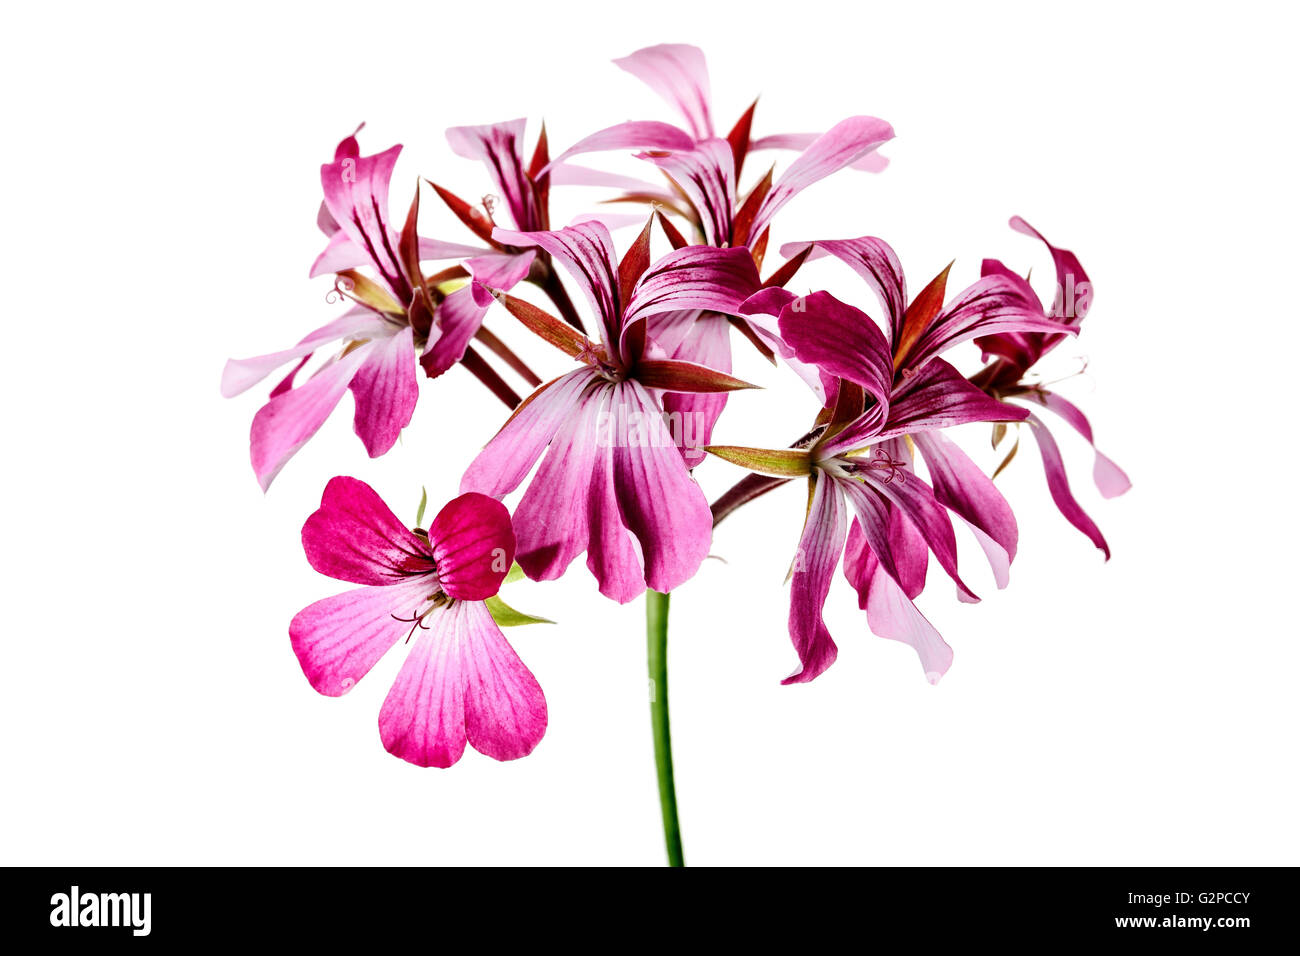 Leuchtende Geranien Blume Stockfoto